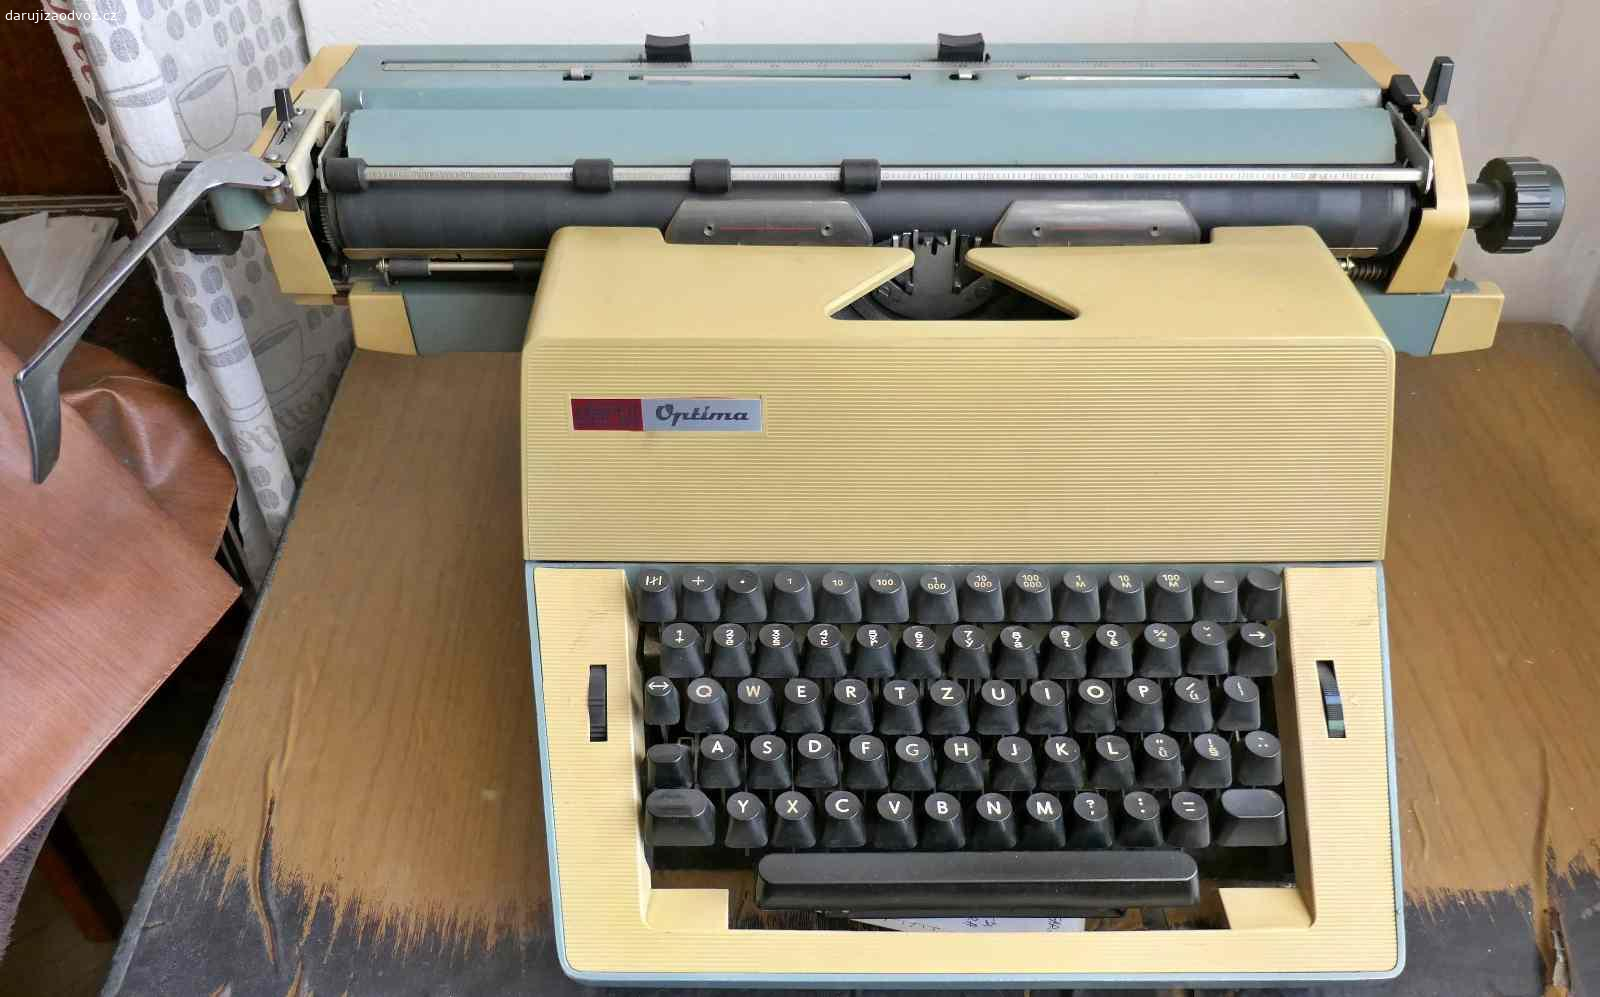 Daruji psací stroj. Dva starší mechanické psací stroje s dlouhým válcem - Optima a Robotron.
Funkční.